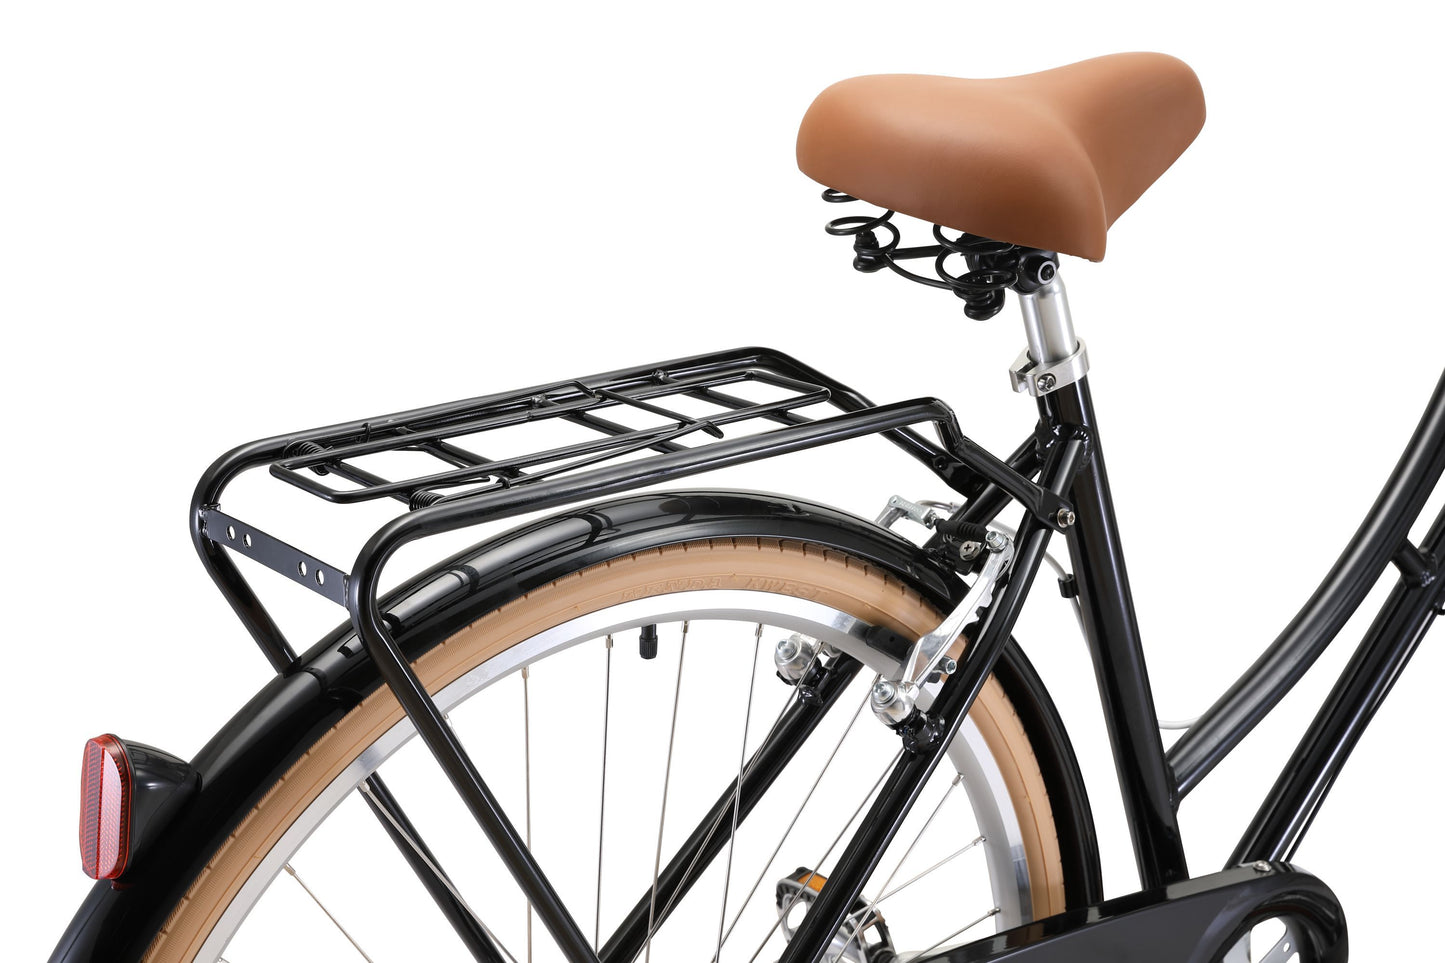 Ladies Deluxe Vintage Bike in Black featuring rear pannier rack from Reid Cycles Australia